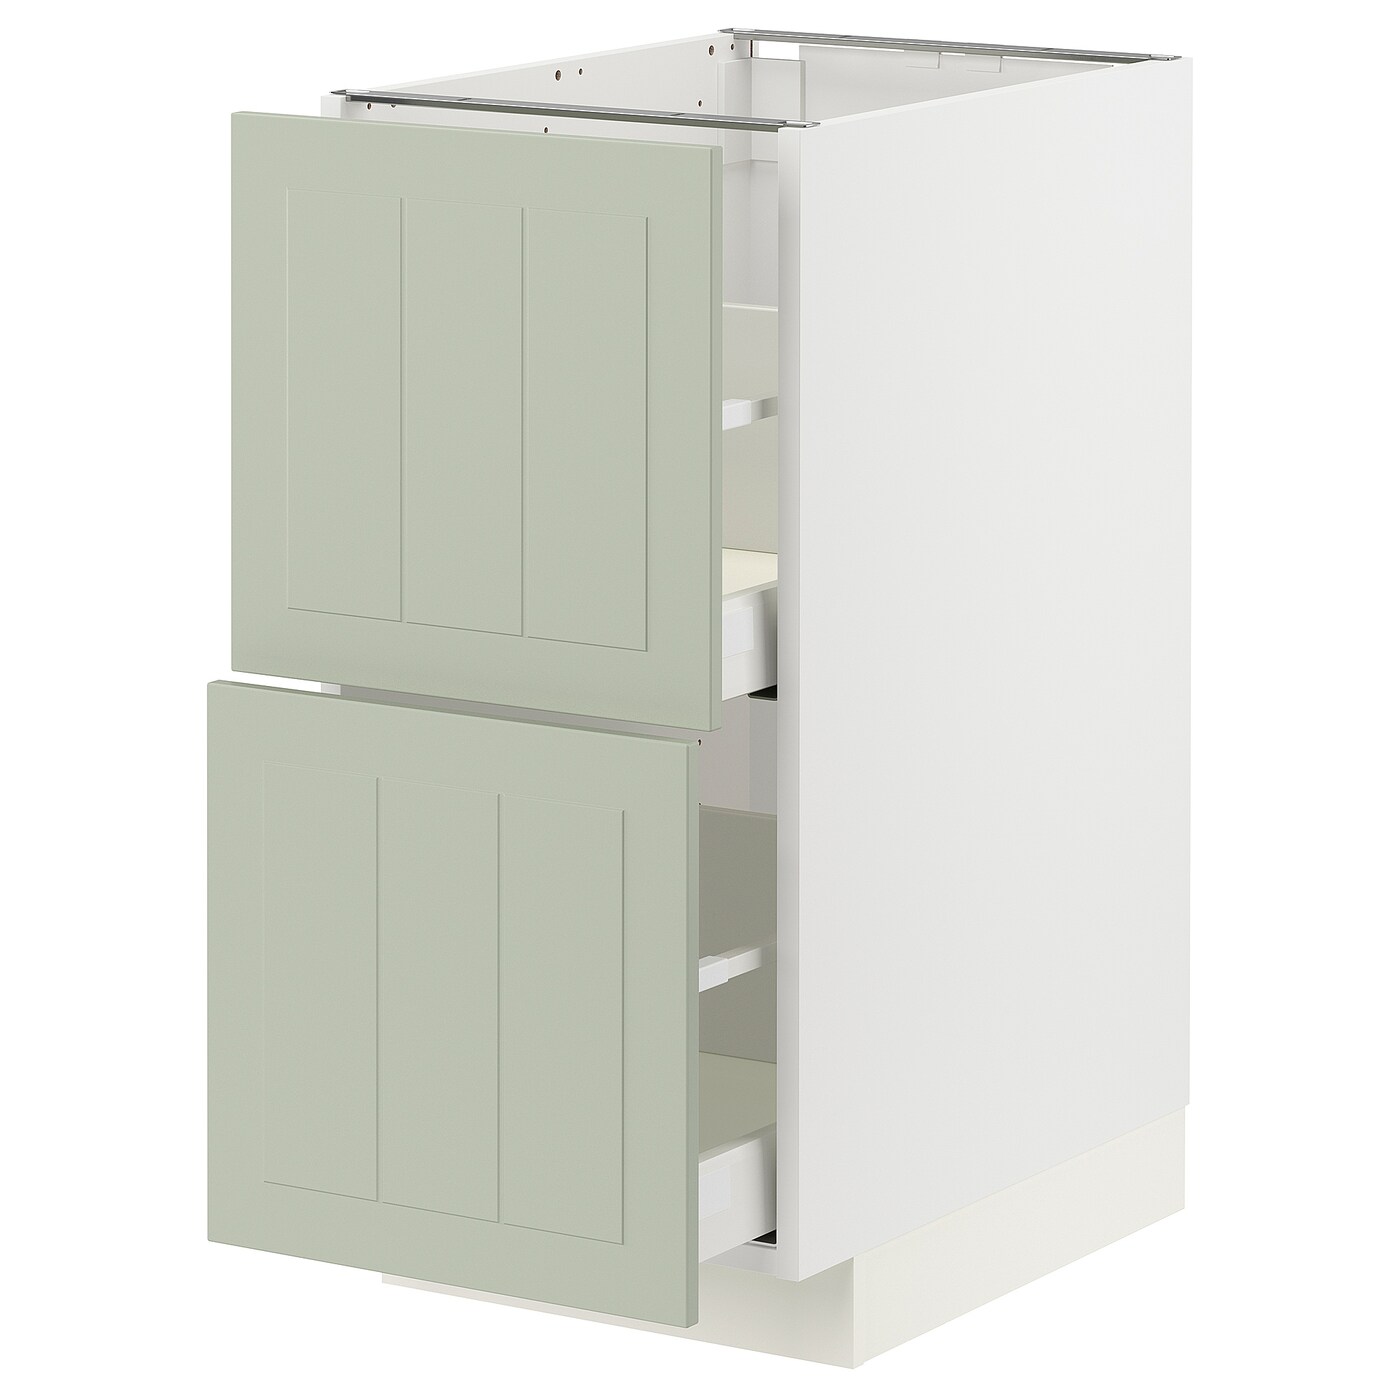 Напольный кухонный шкаф  - IKEA METOD MAXIMERA, 88x61,9x40см, белый/светло-серый, МЕТОД МАКСИМЕРА ИКЕА